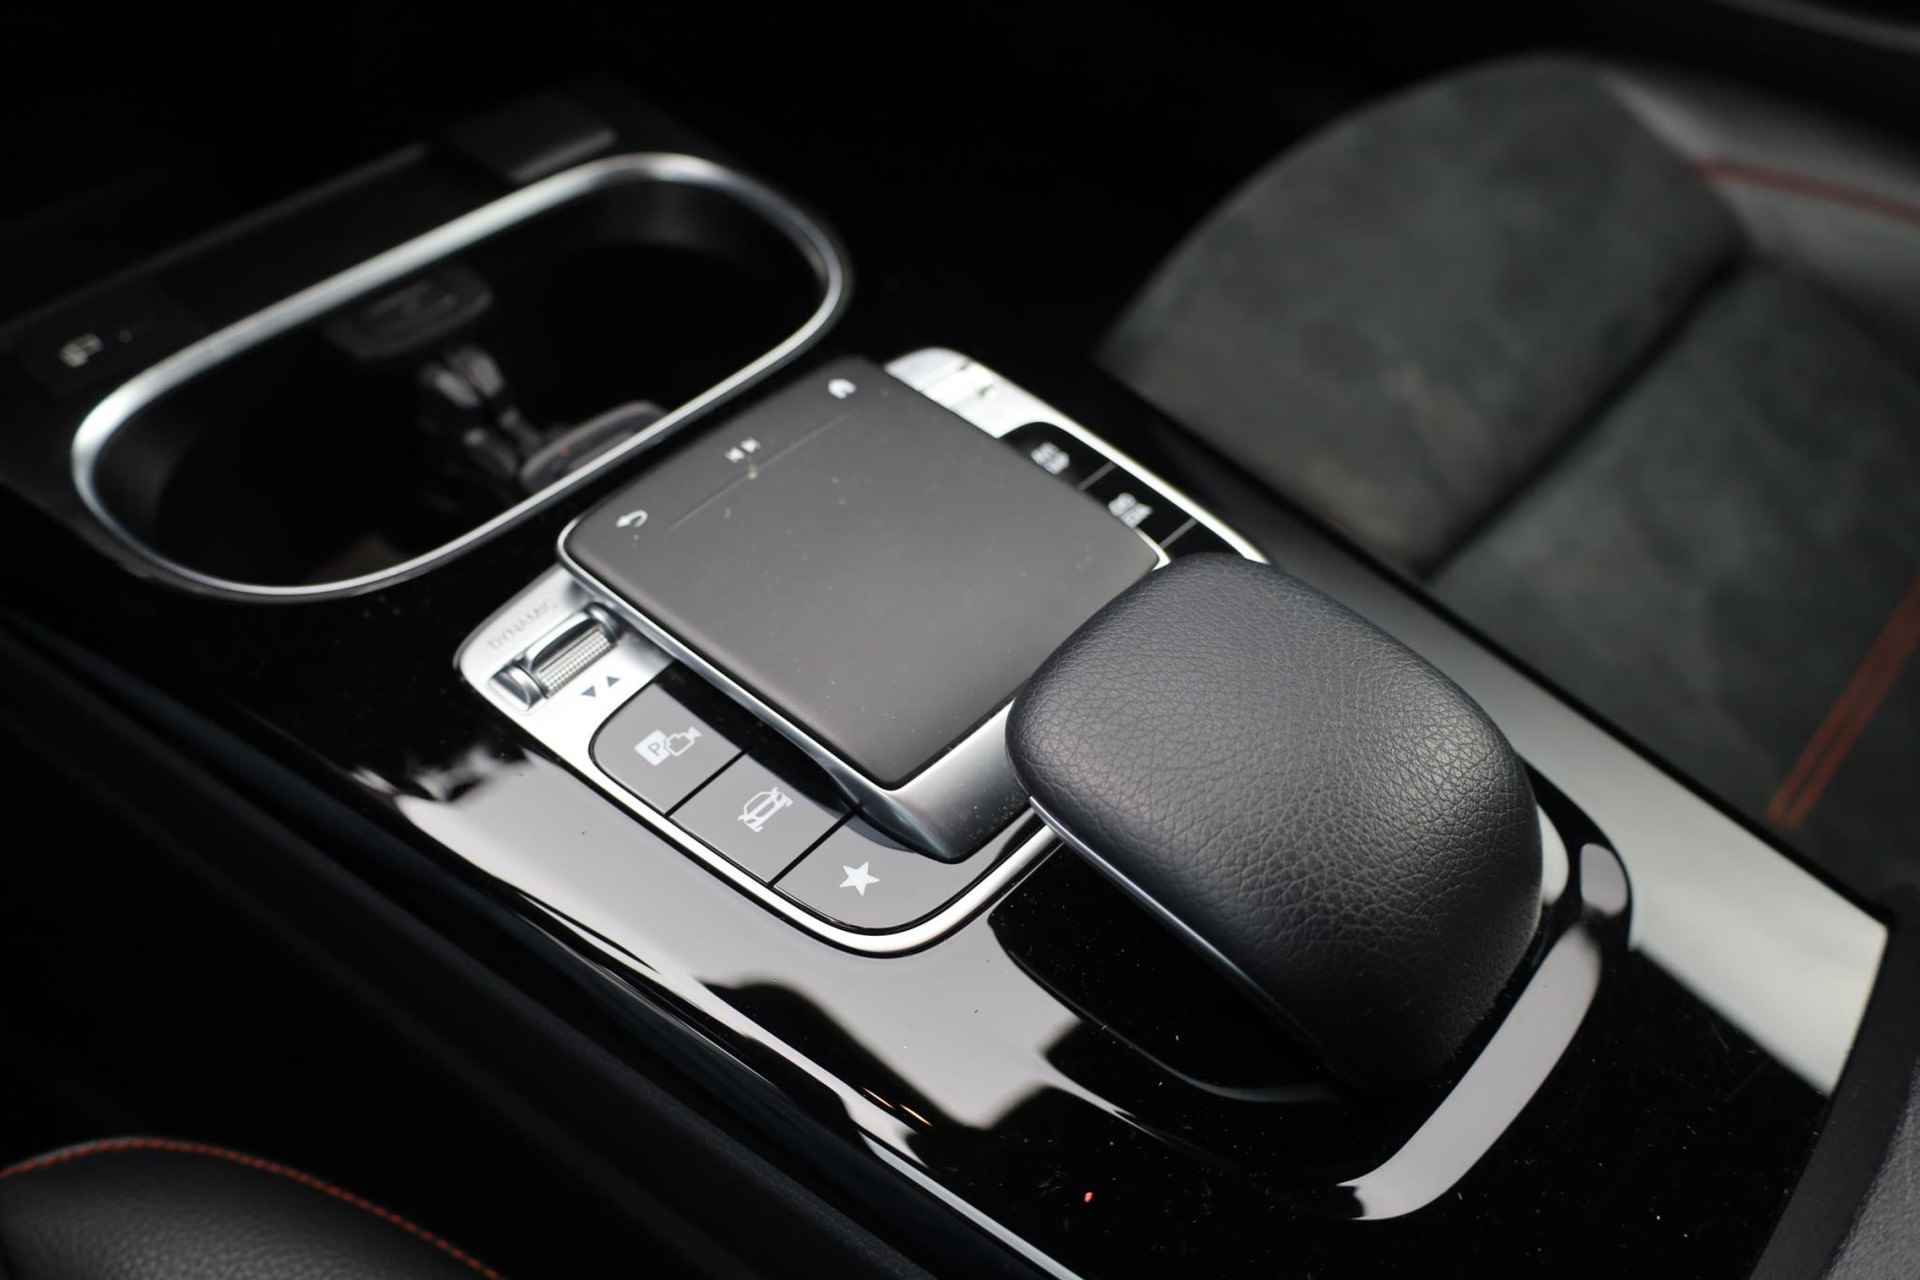 Mercedes-Benz A-klasse 200 Business Solution AMG 120KW/163PK automaat, Leder / alcantara, winterset LMV digitaal dashboard, navigatie, LED verlichting voor en achter, 18" LMV, stoelverwarming, parkeersensoren voor en achter, AMG bumpers - 32/44